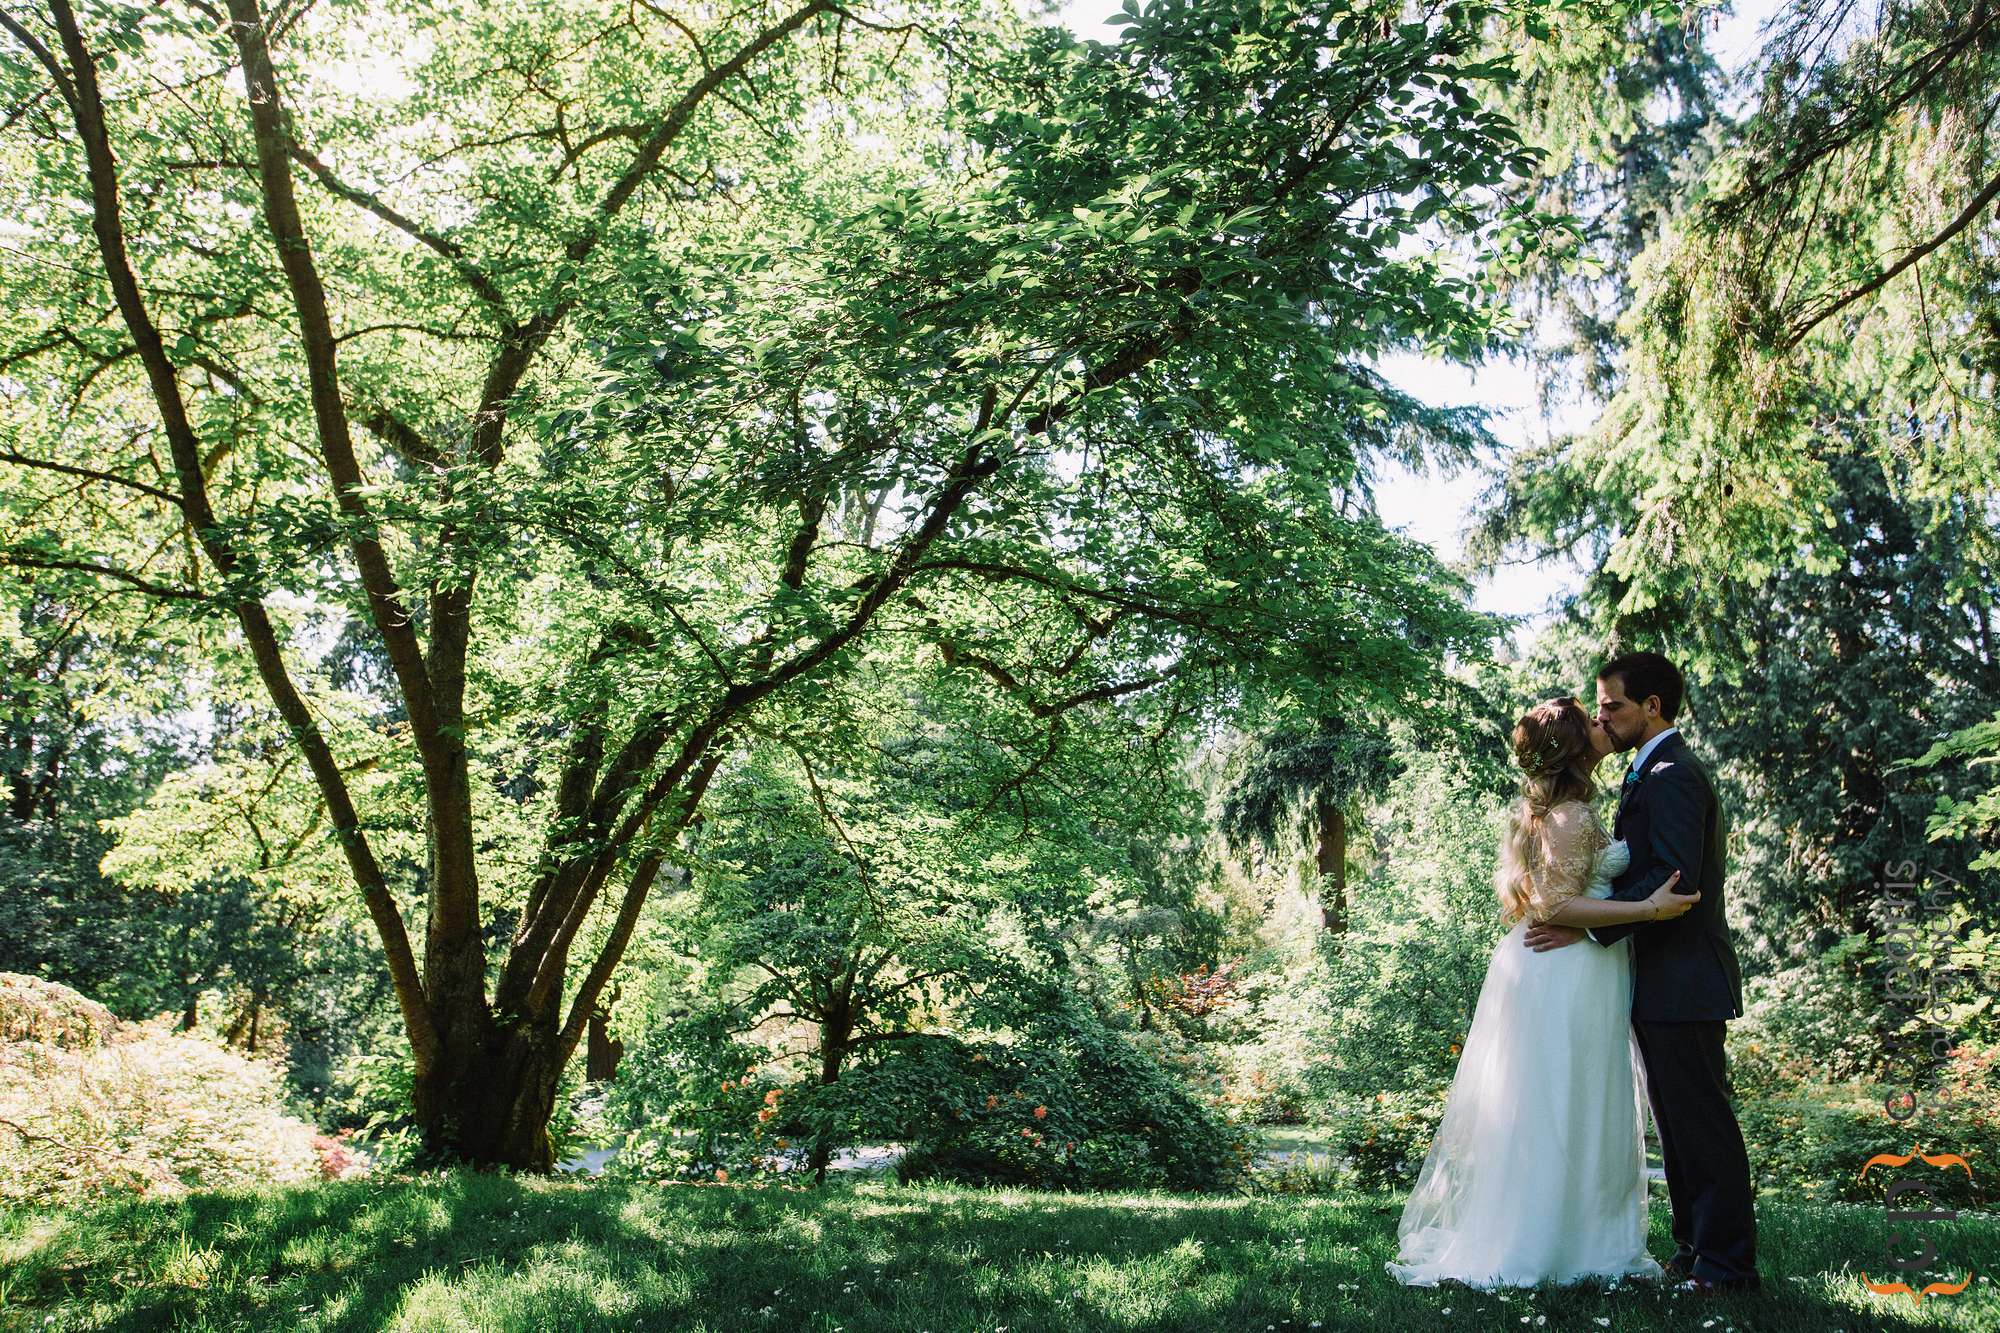 Washington Park Arboretum wedding